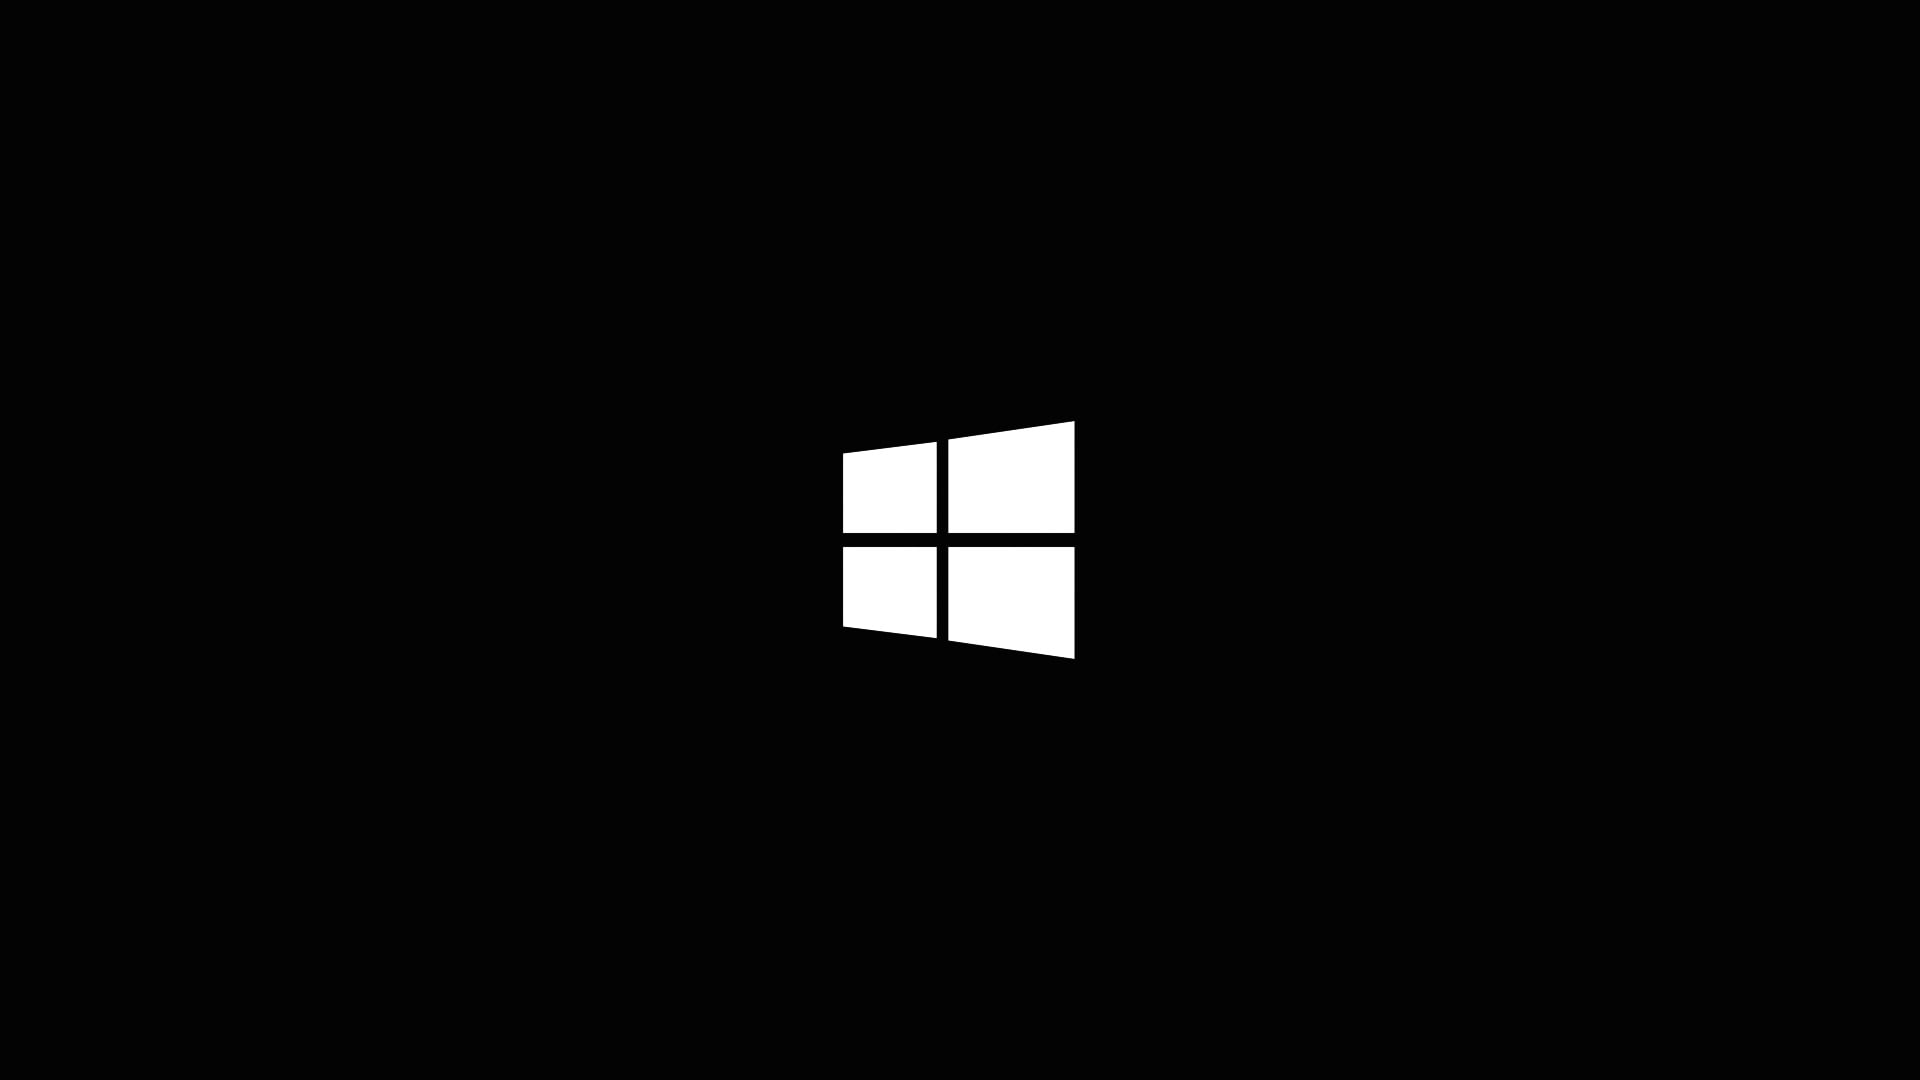 Windows, Windows 10